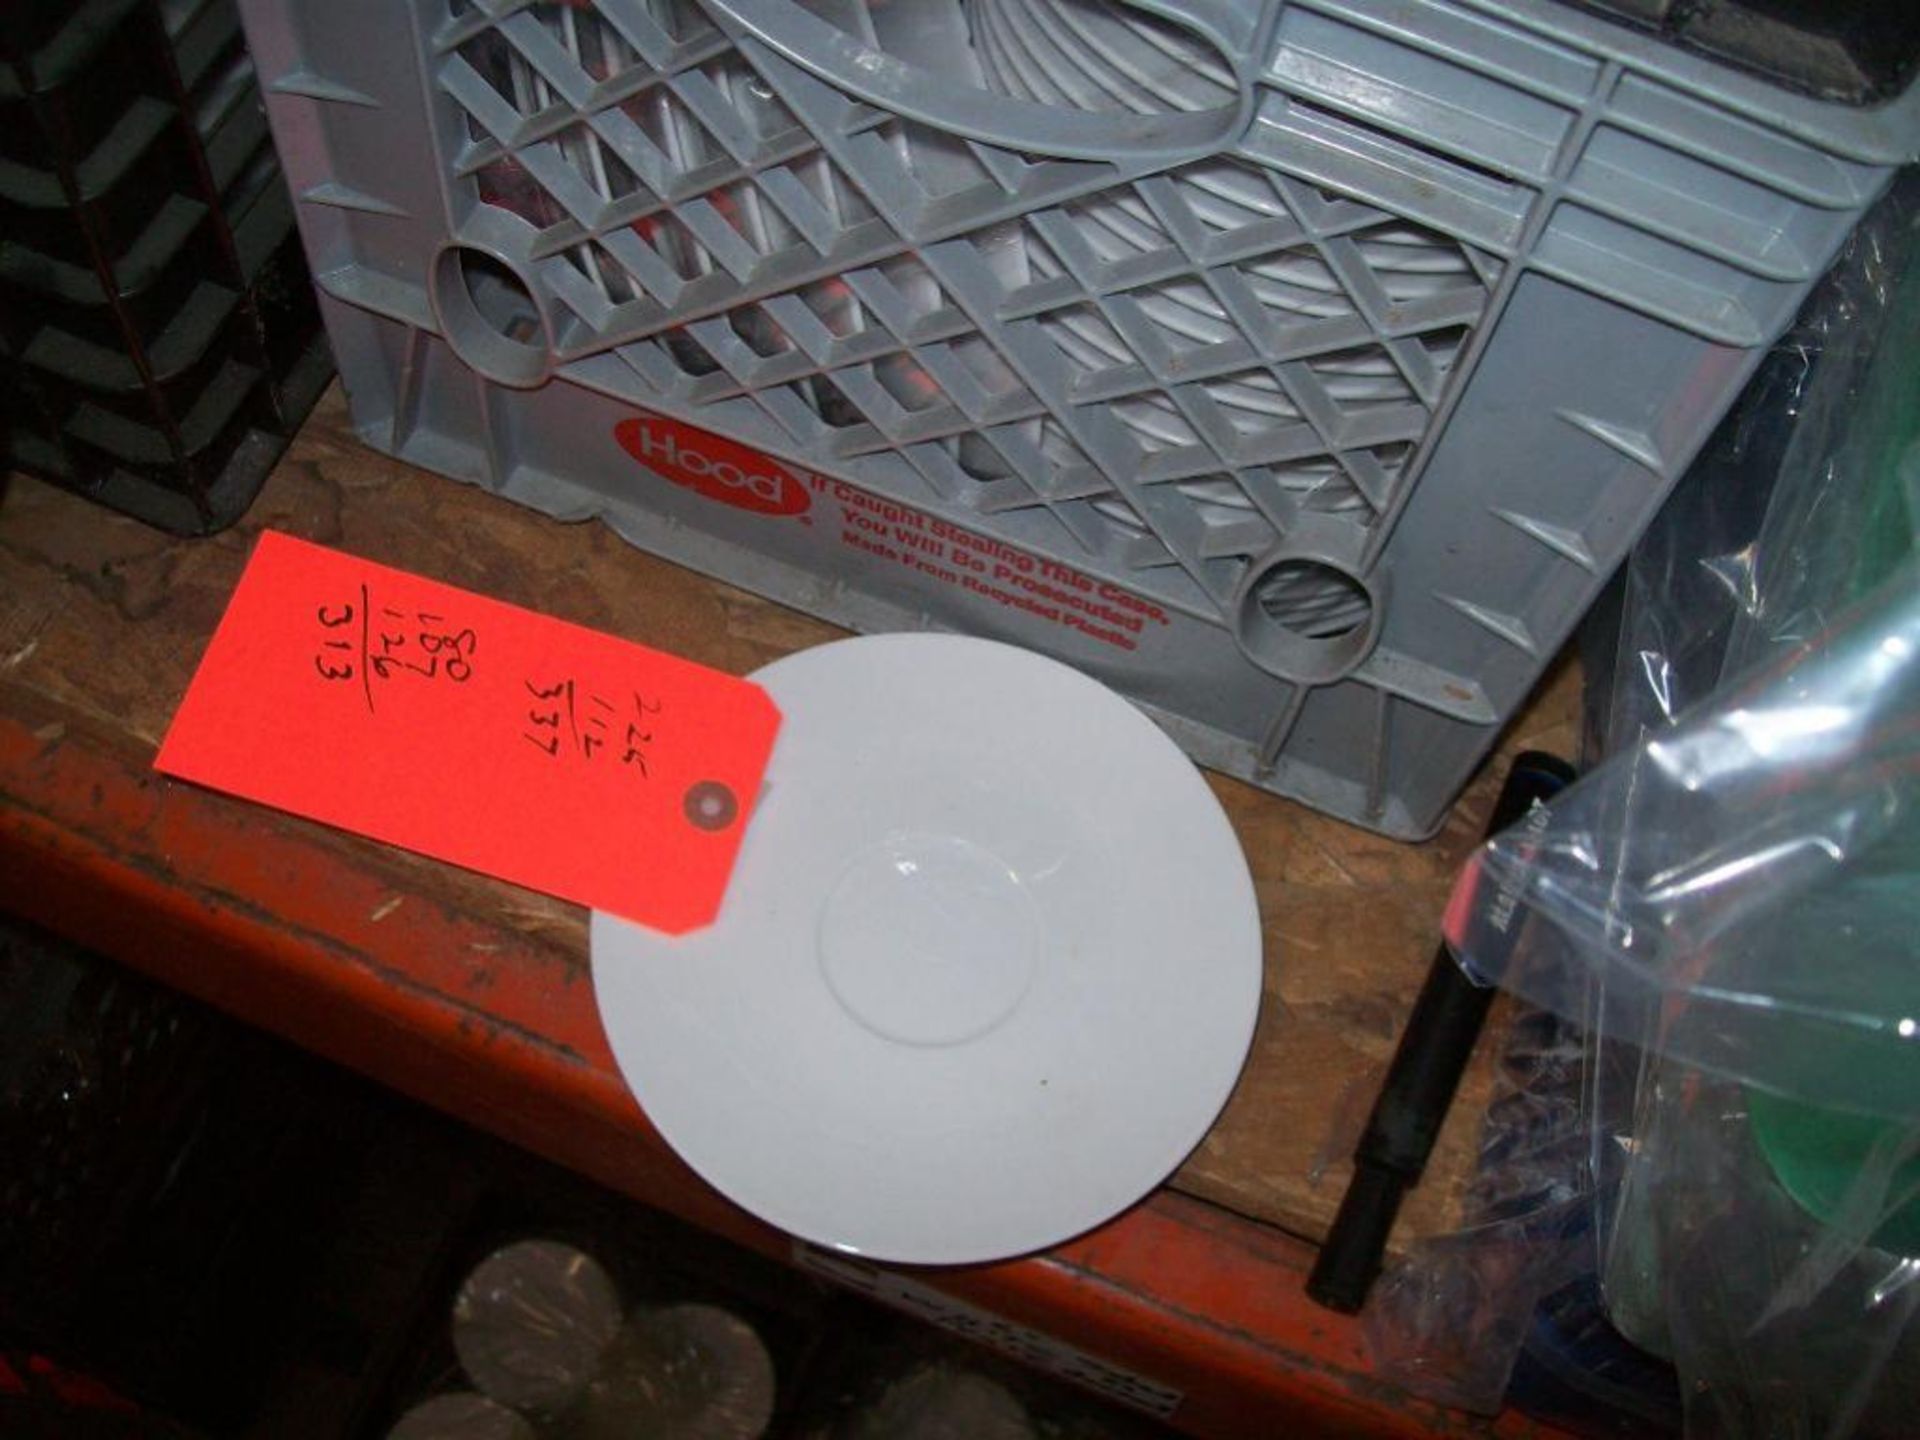 6.75" white china saucers-(2) milk crates - subject to entirety bid